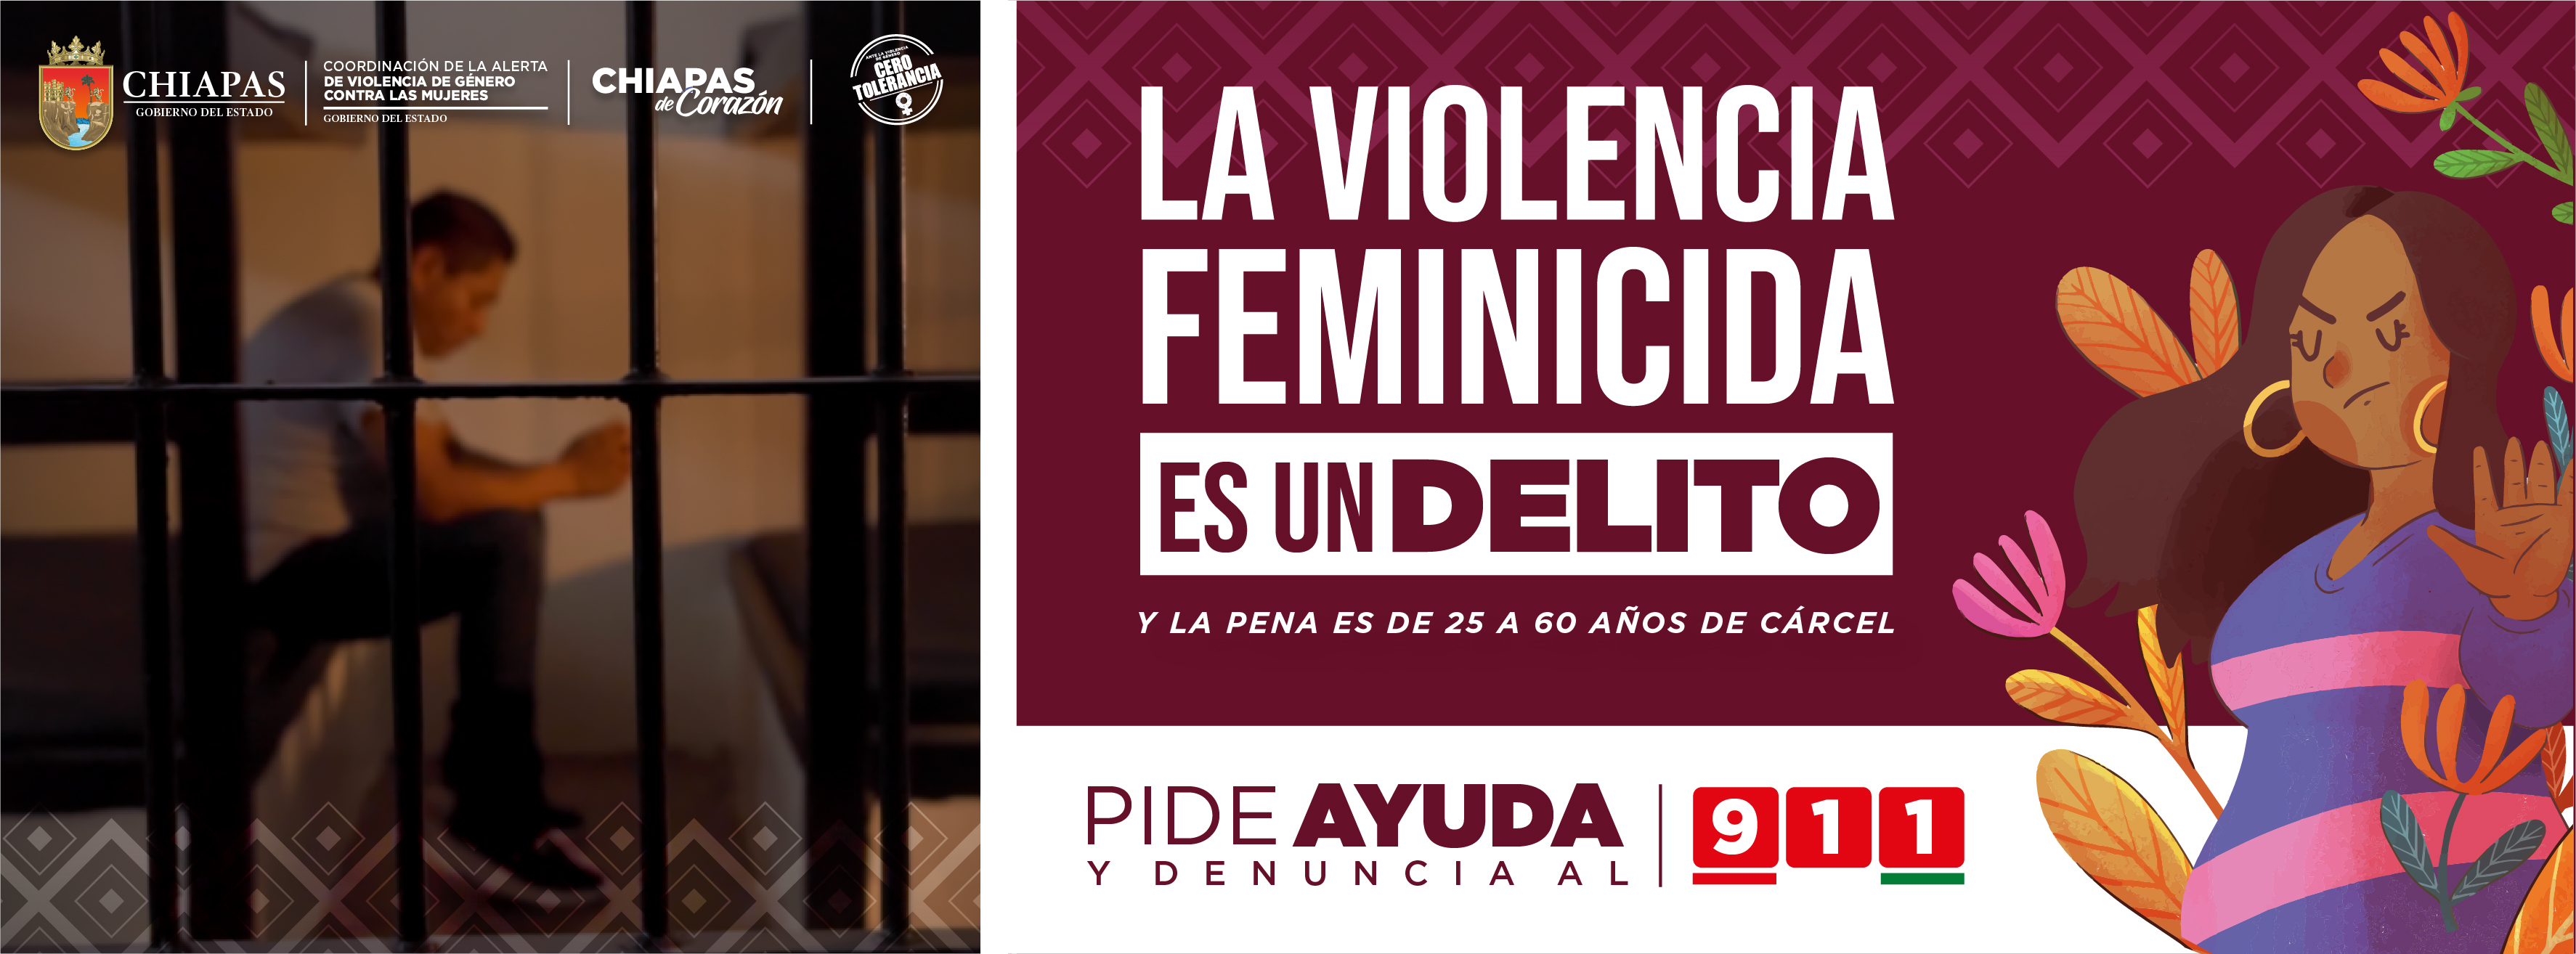 Campaña Violencia Feminicida